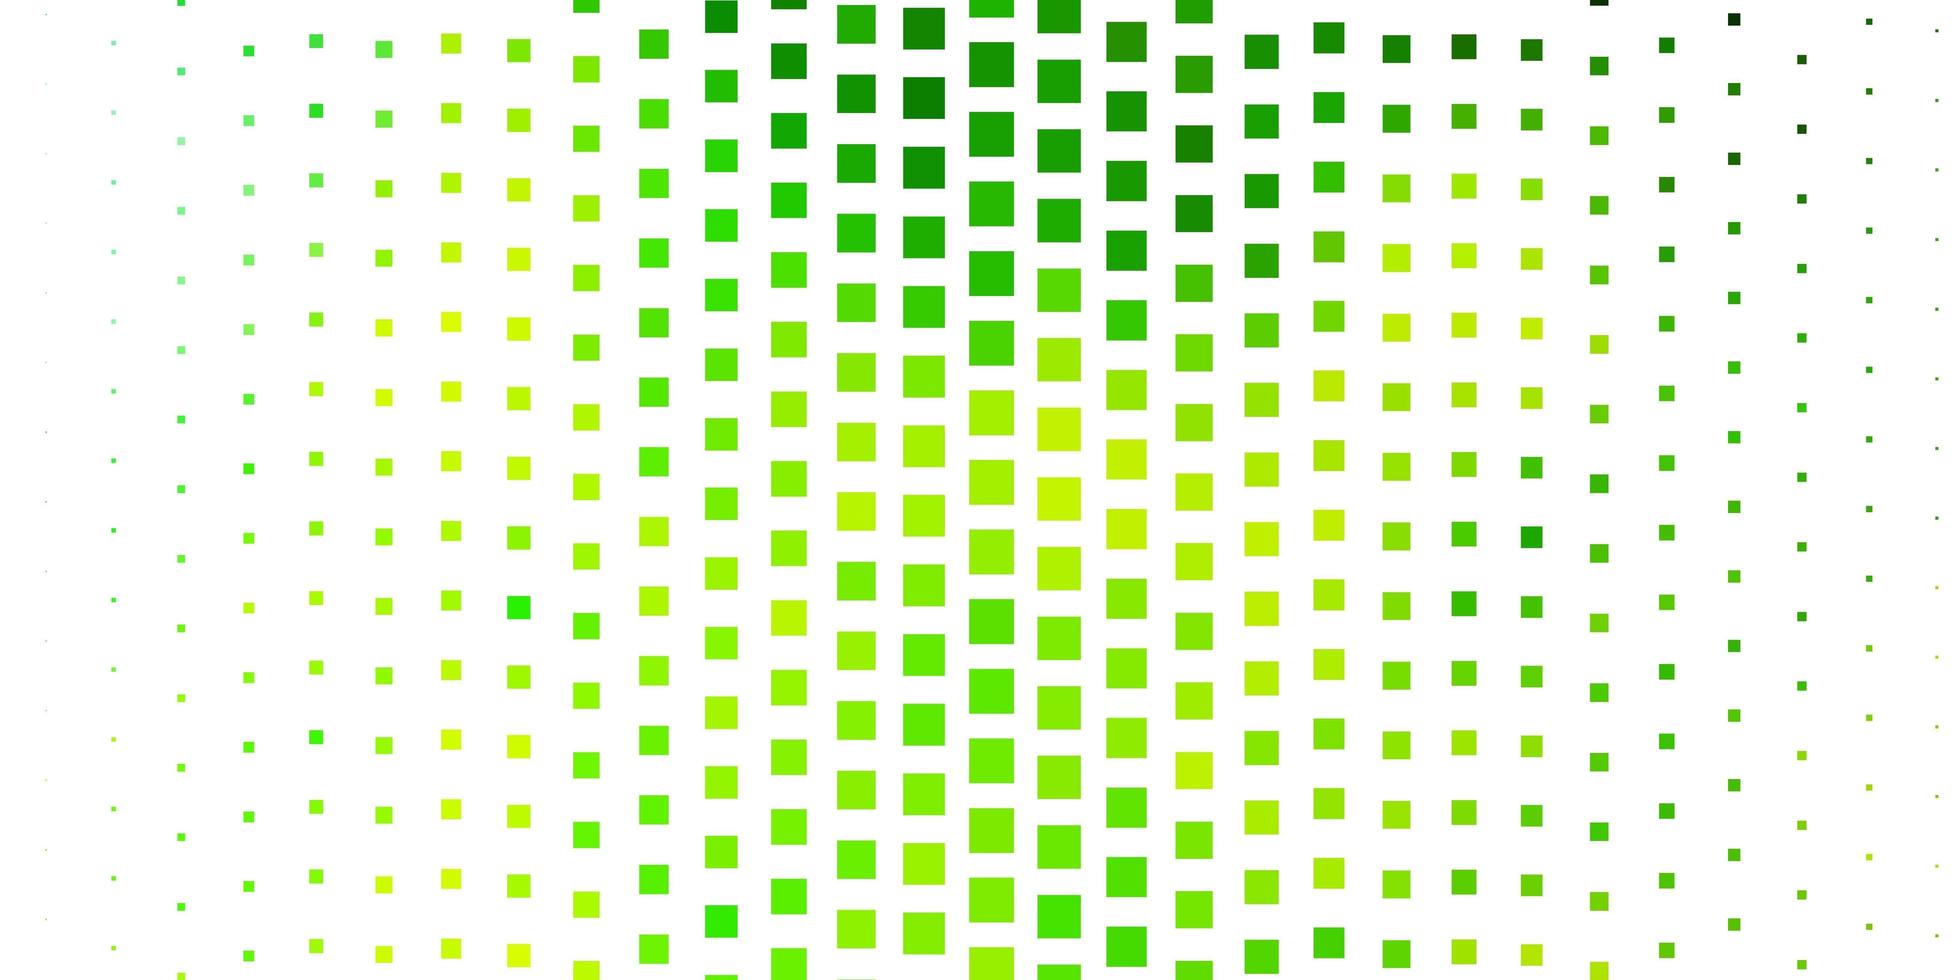 hellgrüne, gelbe Vektorbeschaffenheit im rechteckigen Stil. vektor